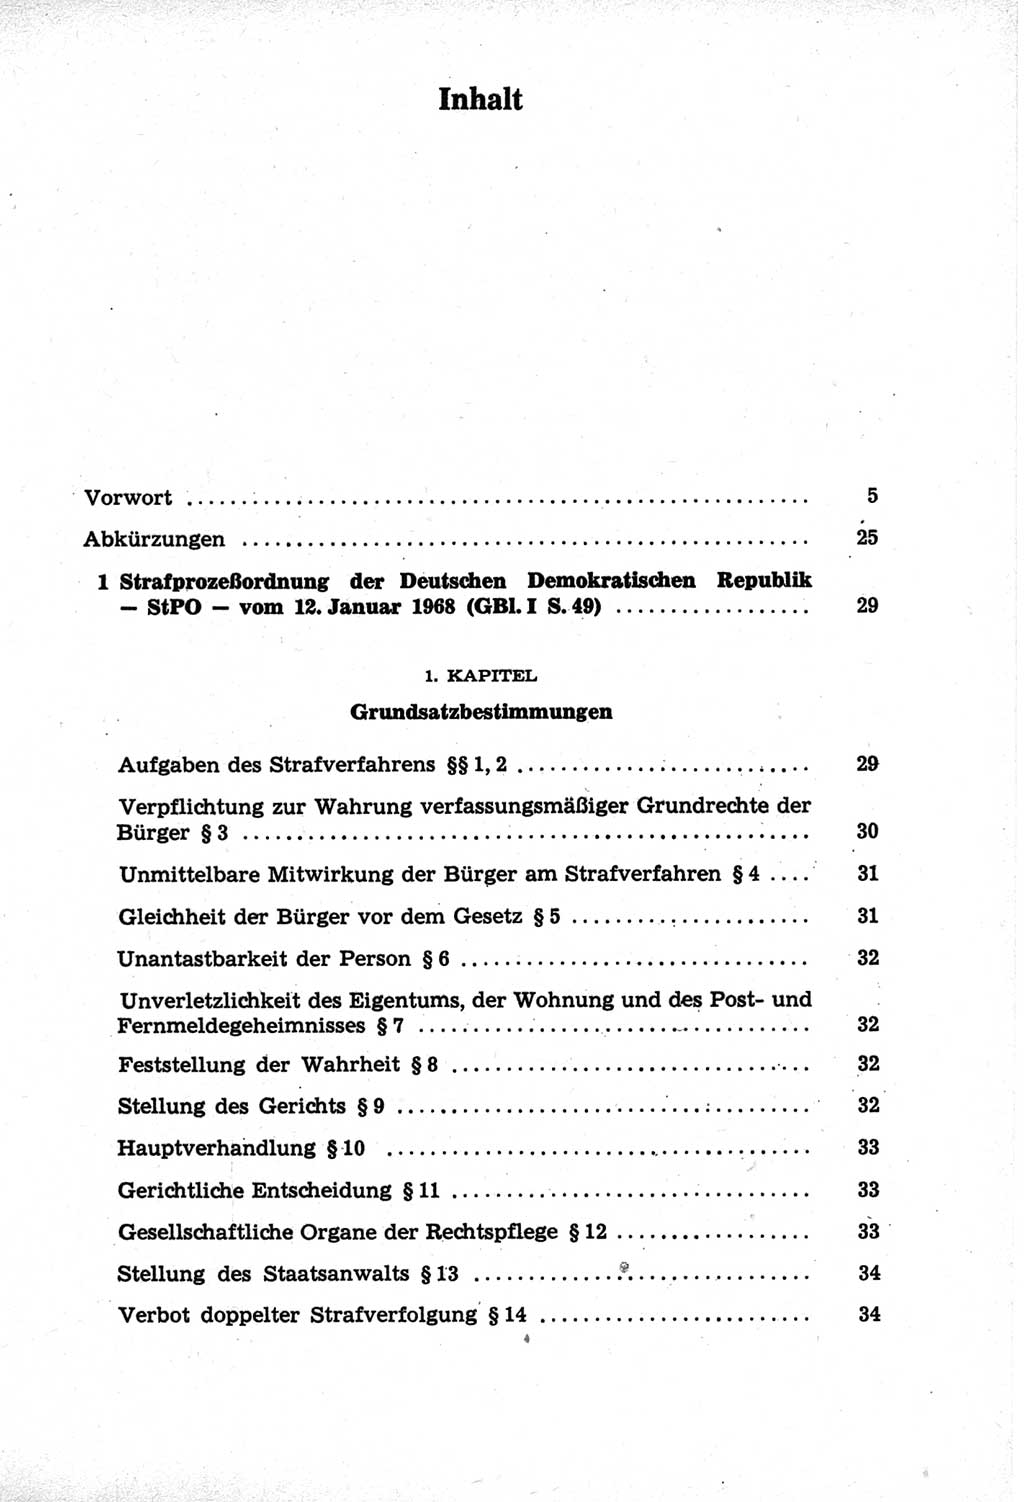 Strafprozeßordnung (StPO) der Deutschen Demokratischen Republik (DDR) und angrenzende Gesetze und Bestimmungen 1968, Seite 7 (StPO Ges. Bstgn. DDR 1968, S. 7)